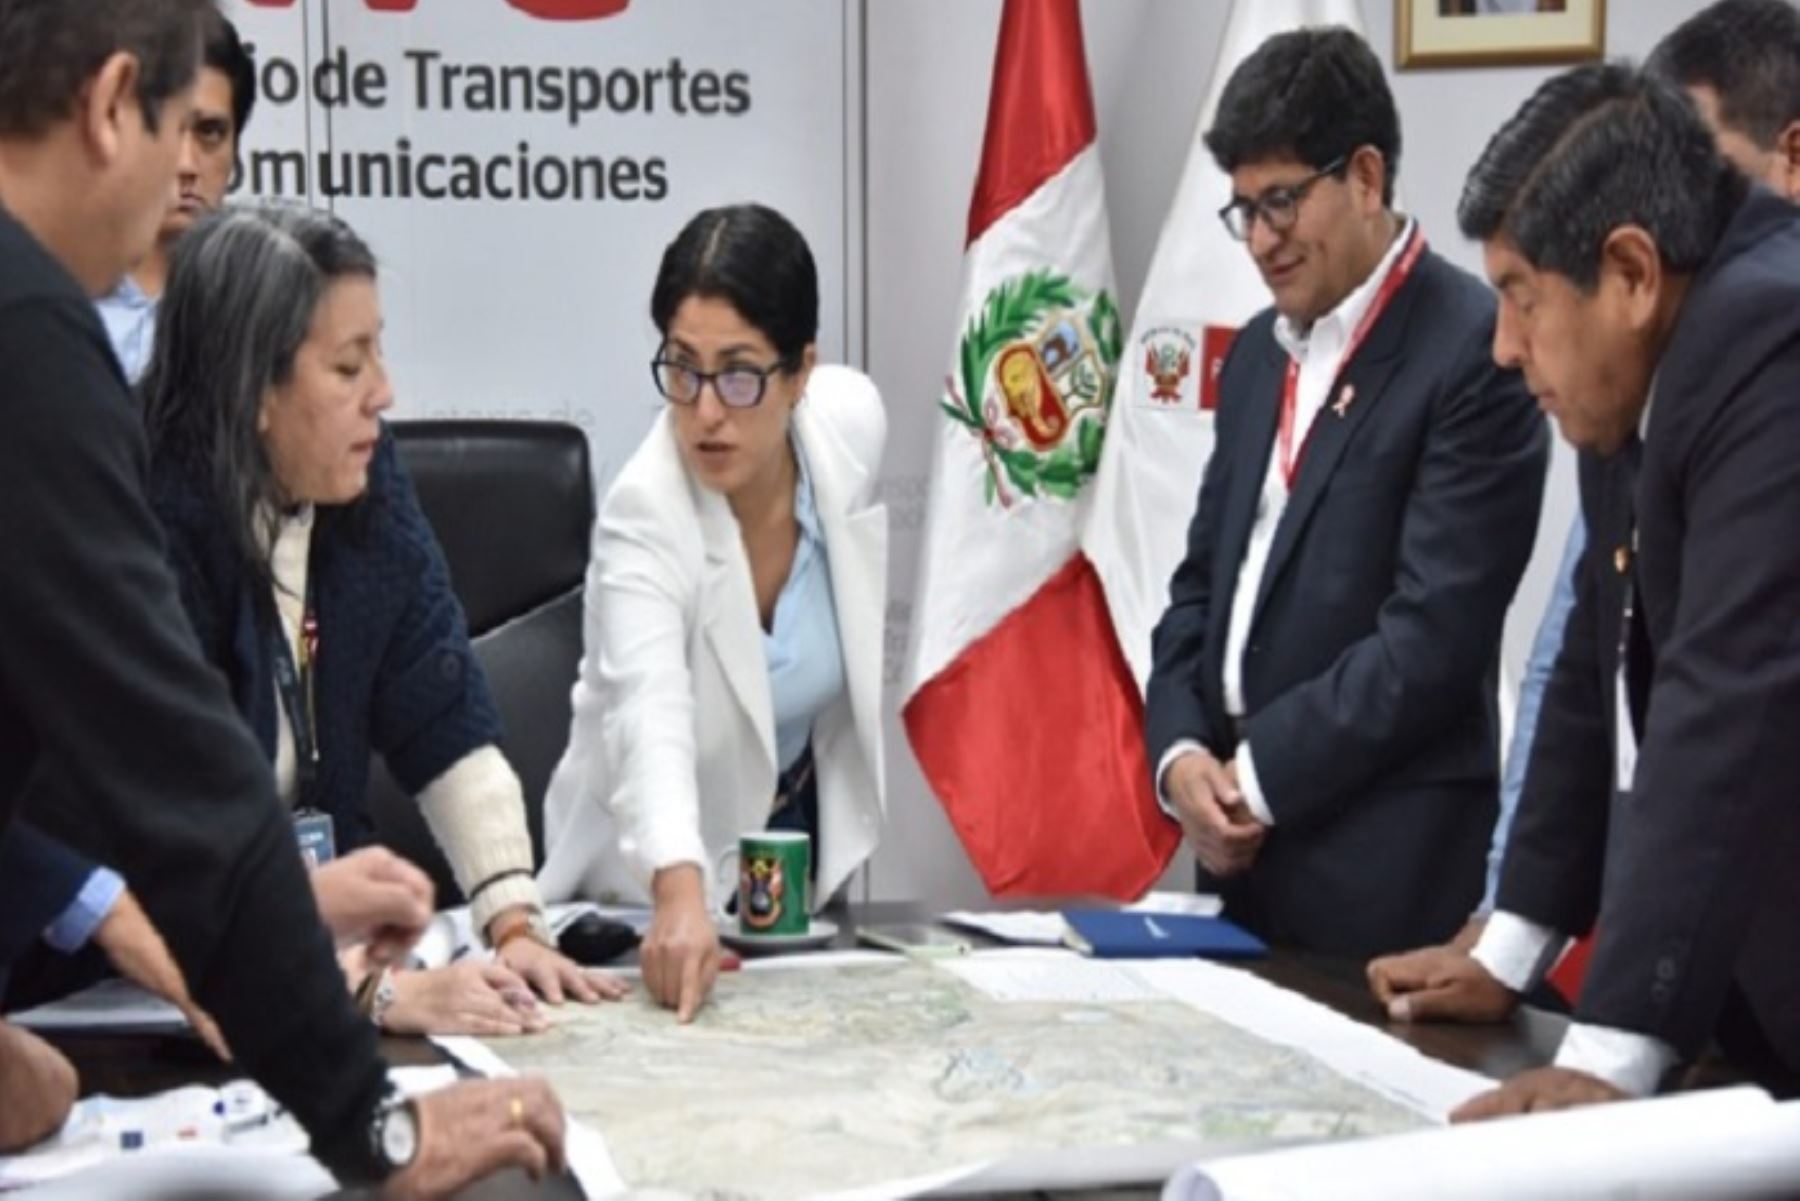 La ministra de Transportes y Comunicaciones, Paola Lazarte, sostuvo una reunión de trabajo con el gobernador regional Rohel Sánchez, el director ejecutivo de ProInversión, José Antonio Salardi, y autoridades locales del sur.